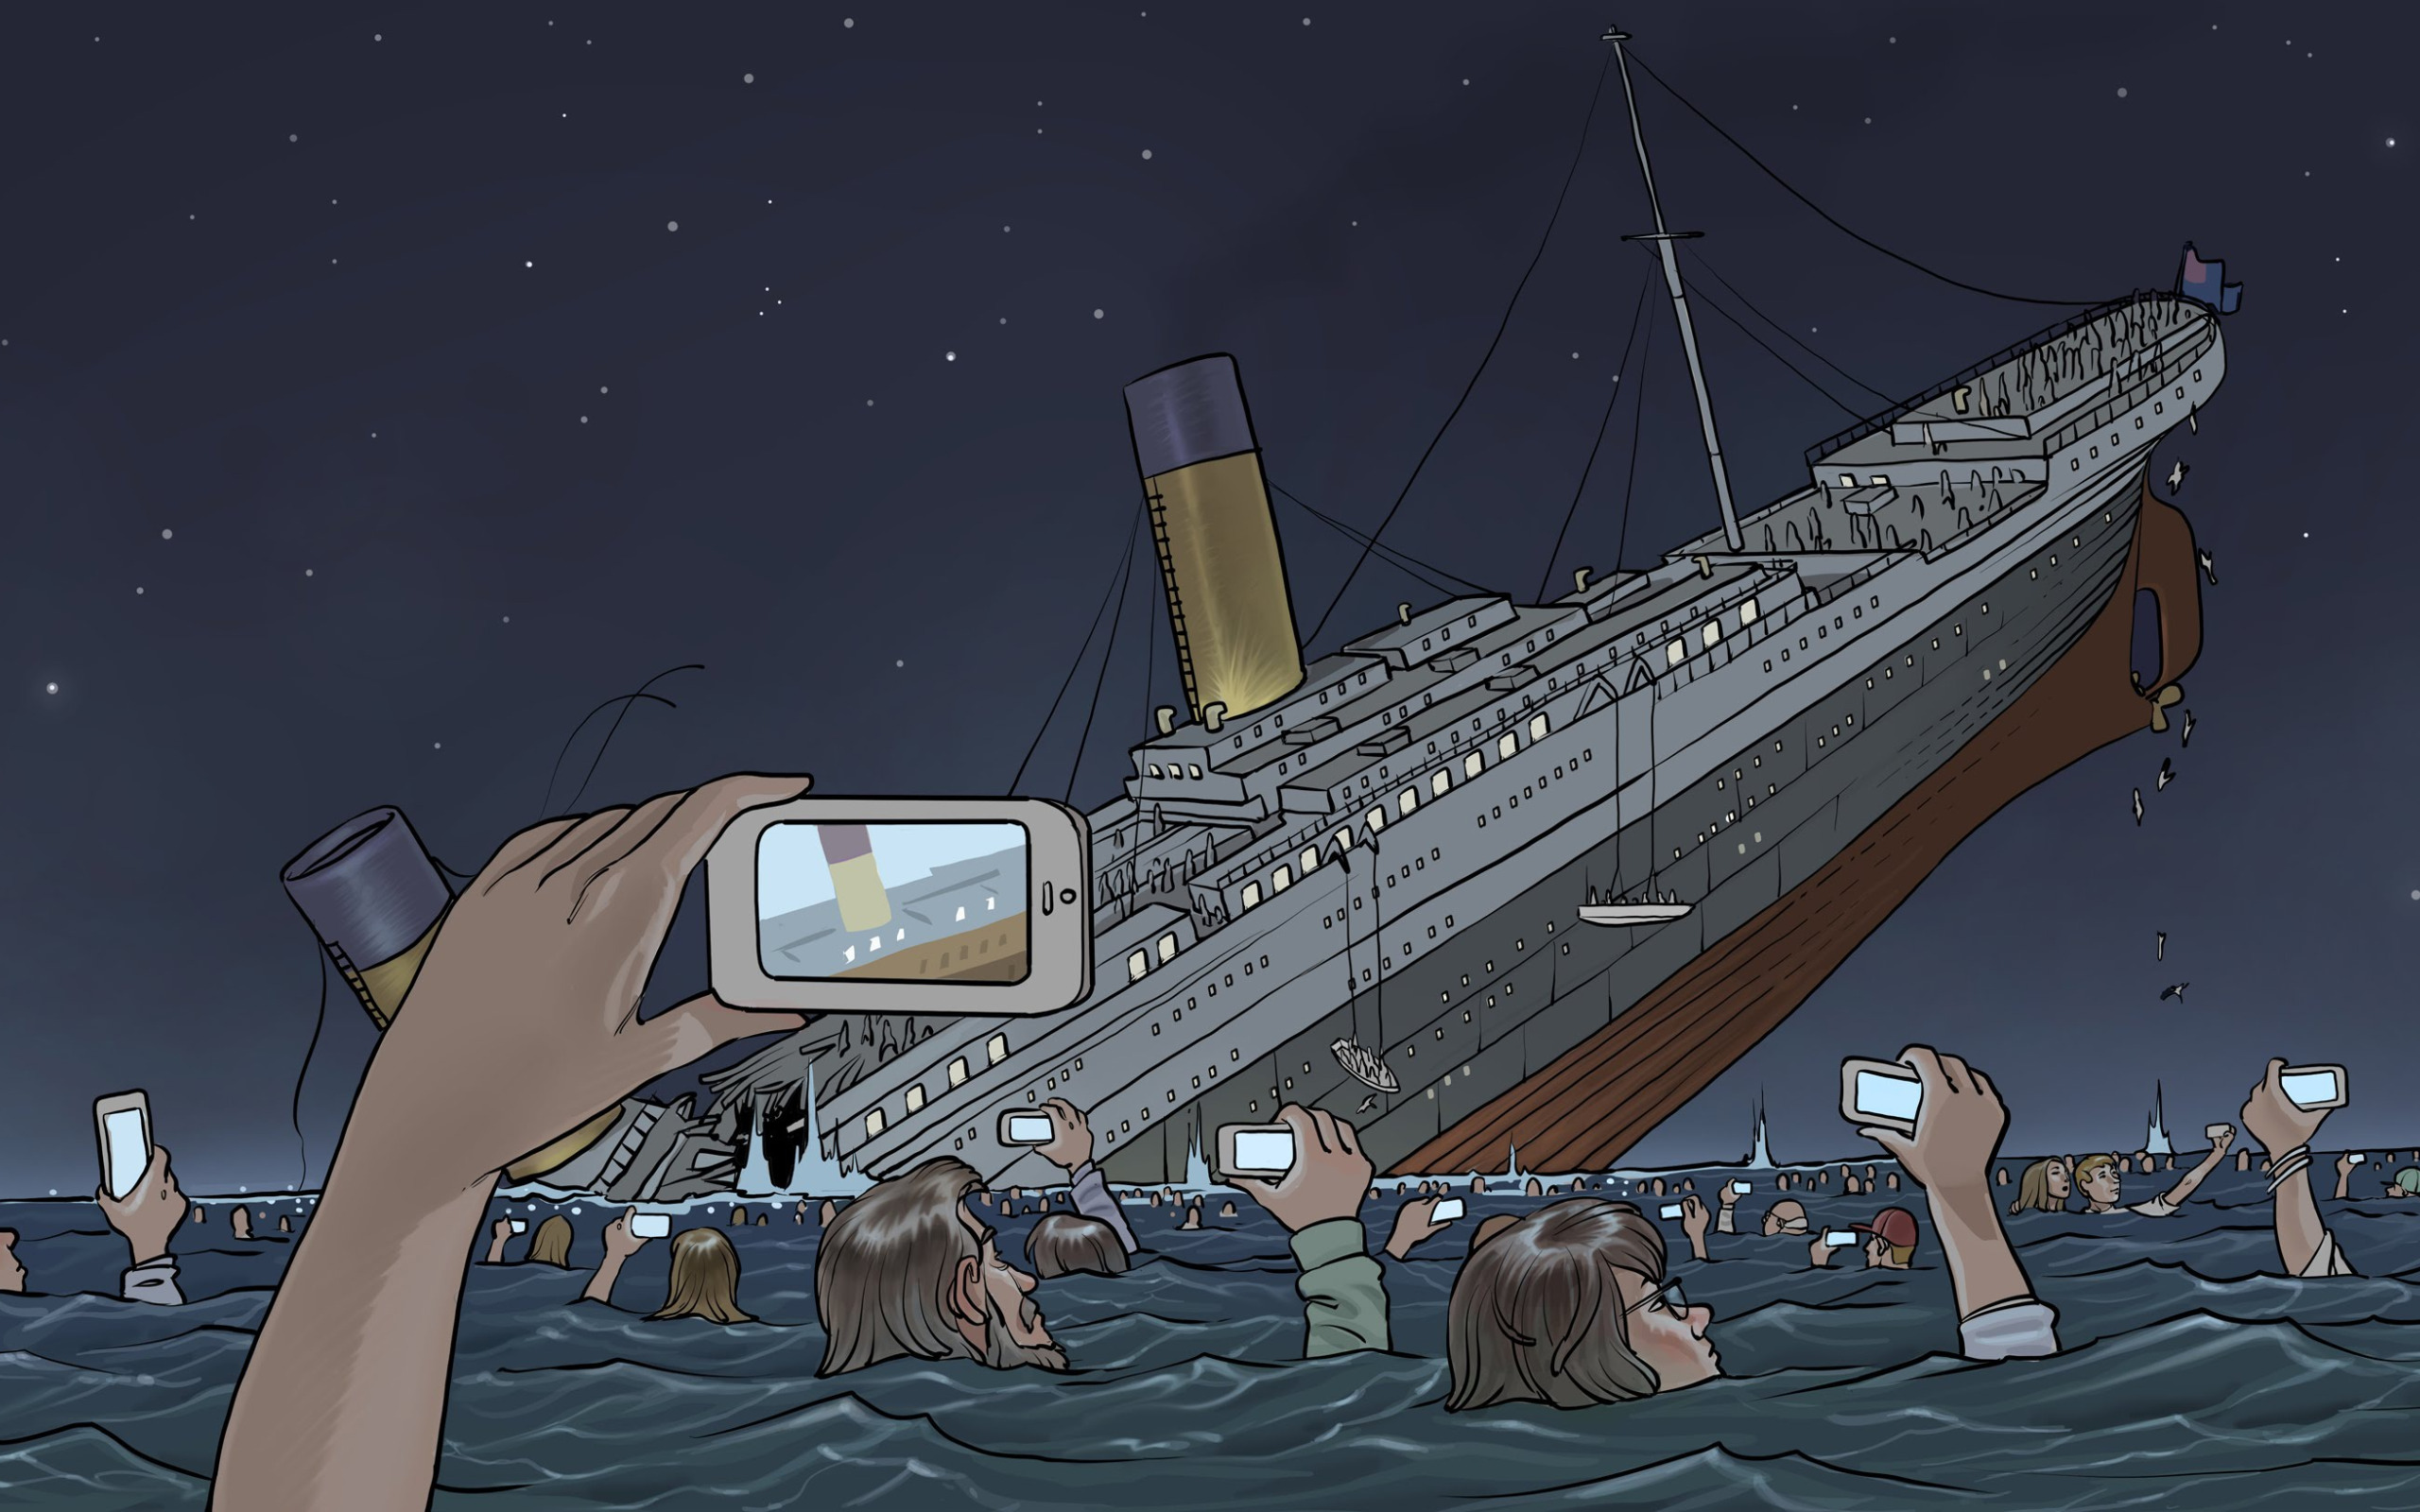 Я тону на корабле. Корабль Титаник тонет. Титаник 2 Клайв Палмер. Корабль идет ко дну. Титаник 21 века.